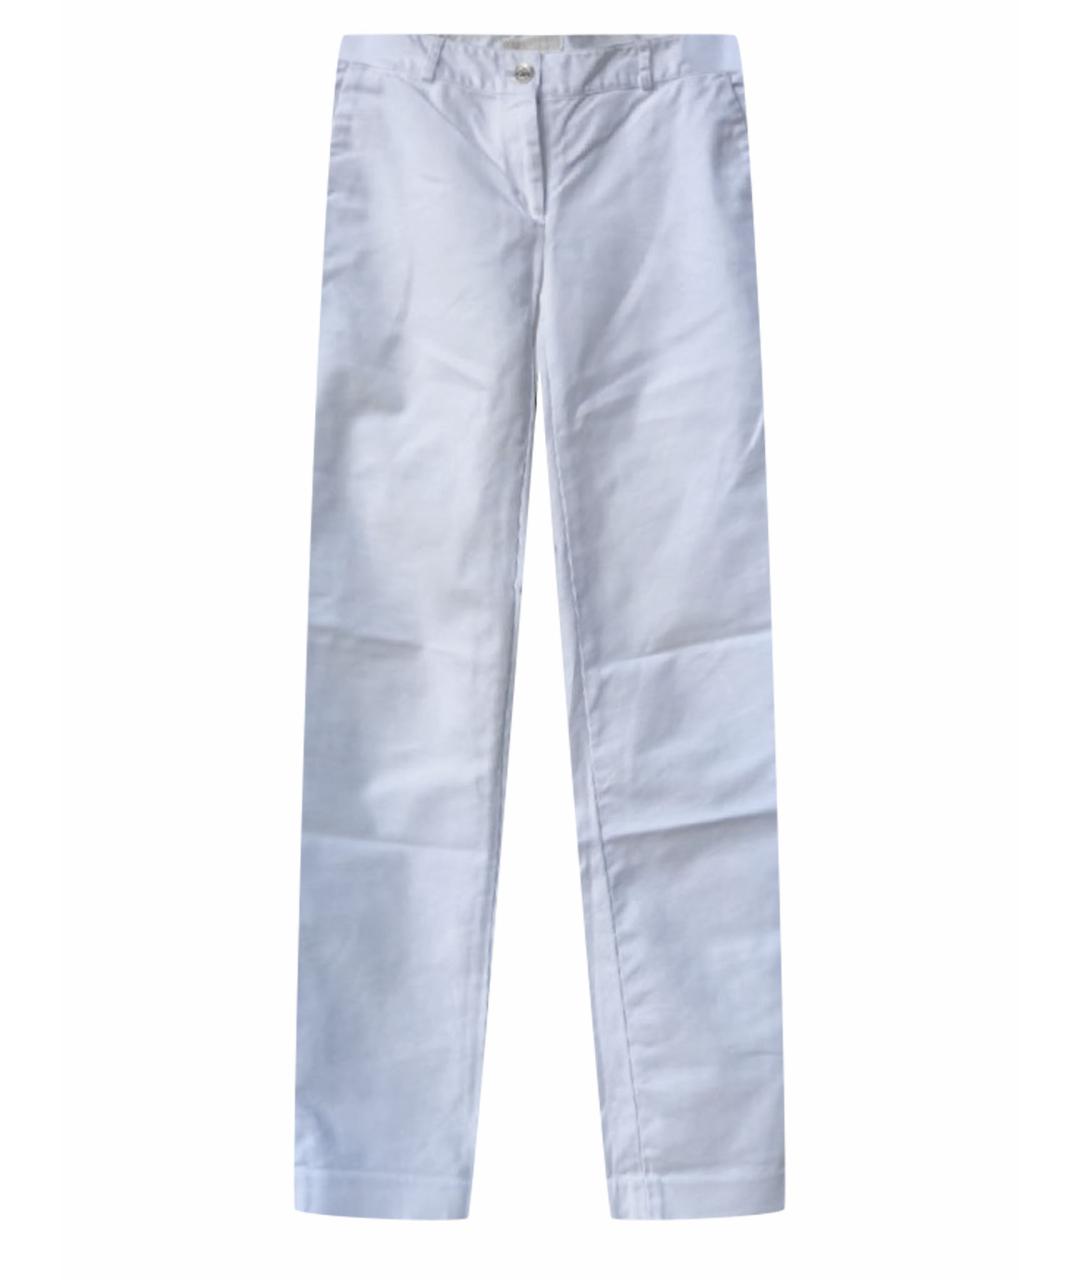 MICHAEL KORS Белые хлопковые прямые брюки, фото 1